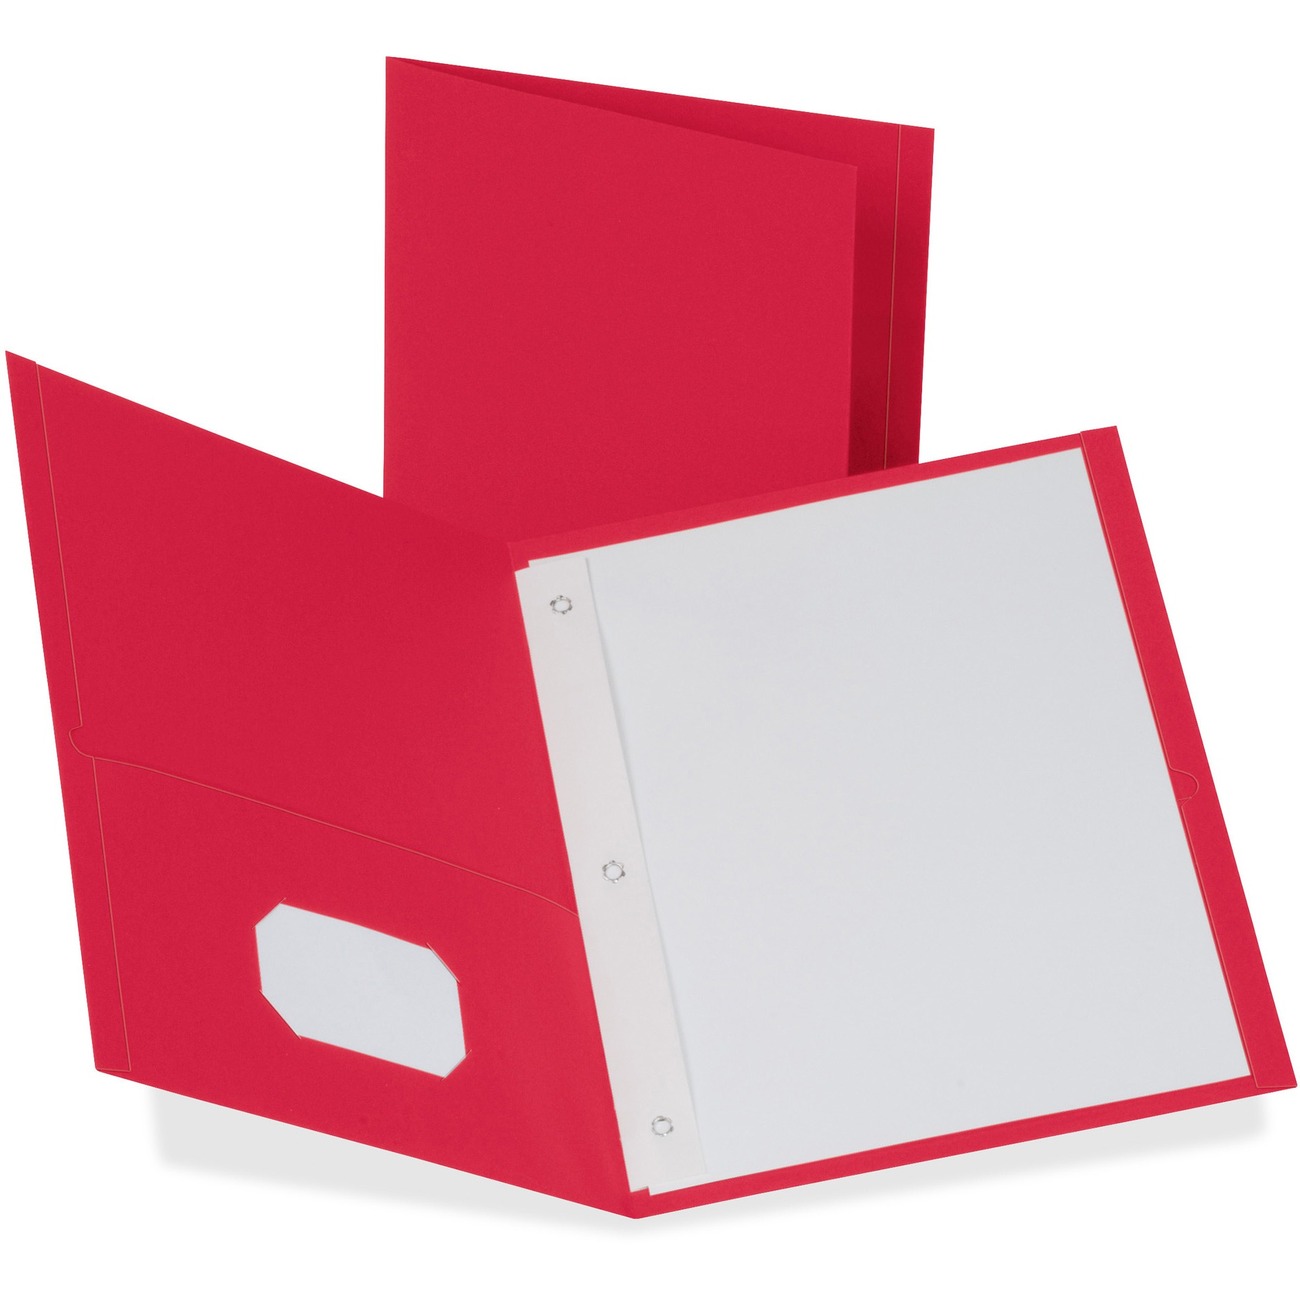 Closed ring binder file folder with label holding pocket on spine